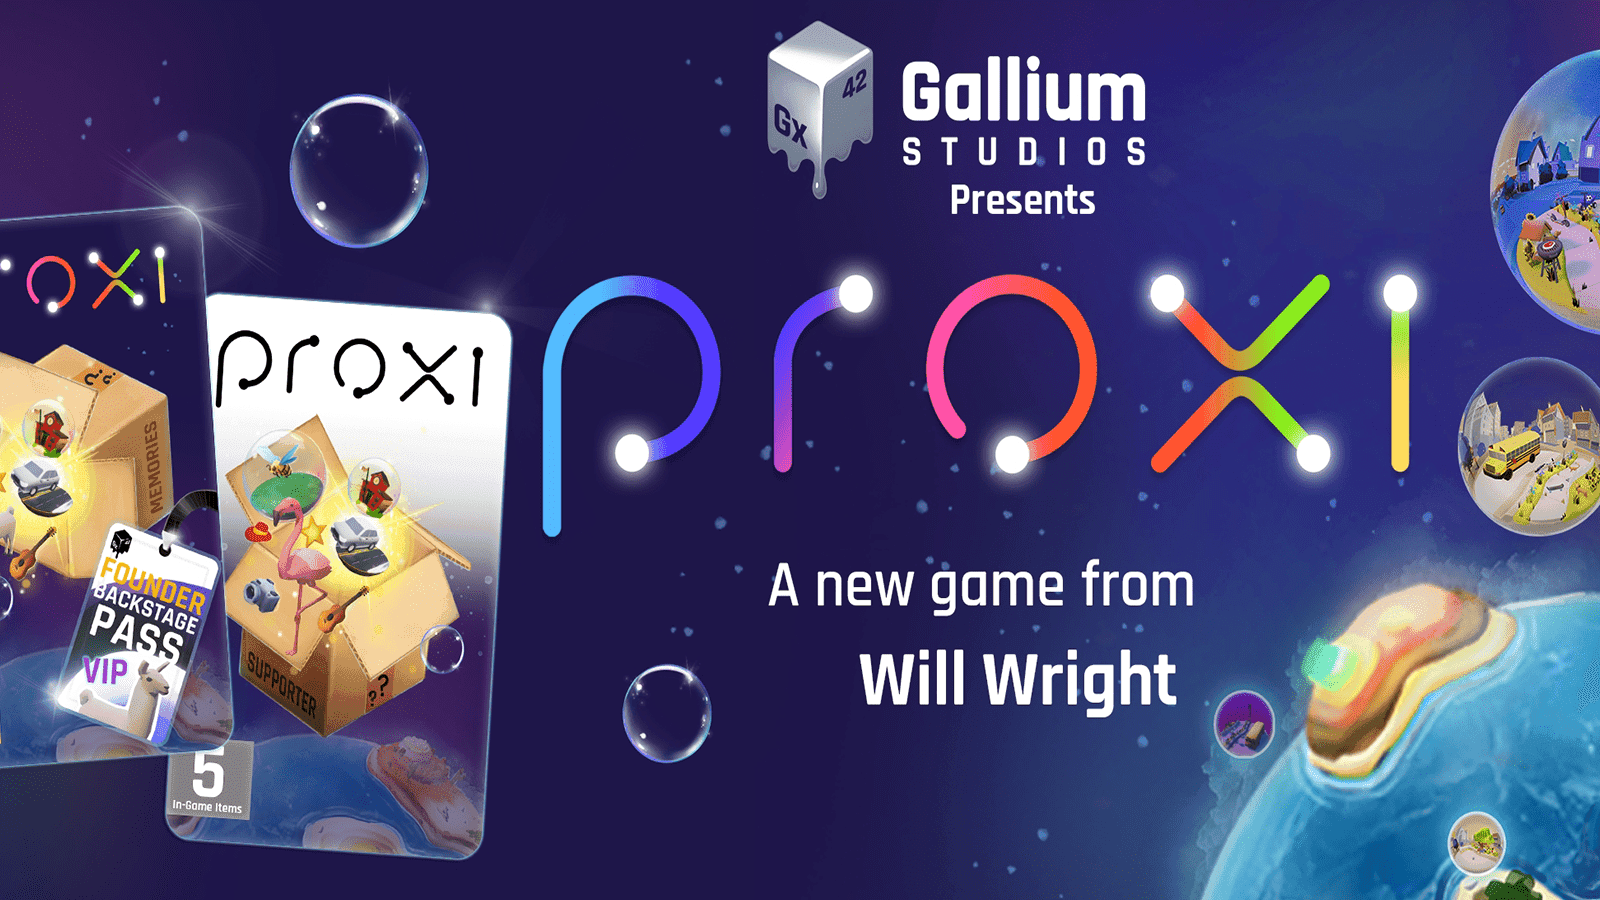 Gallium Studios - desenvolvedor de jogos